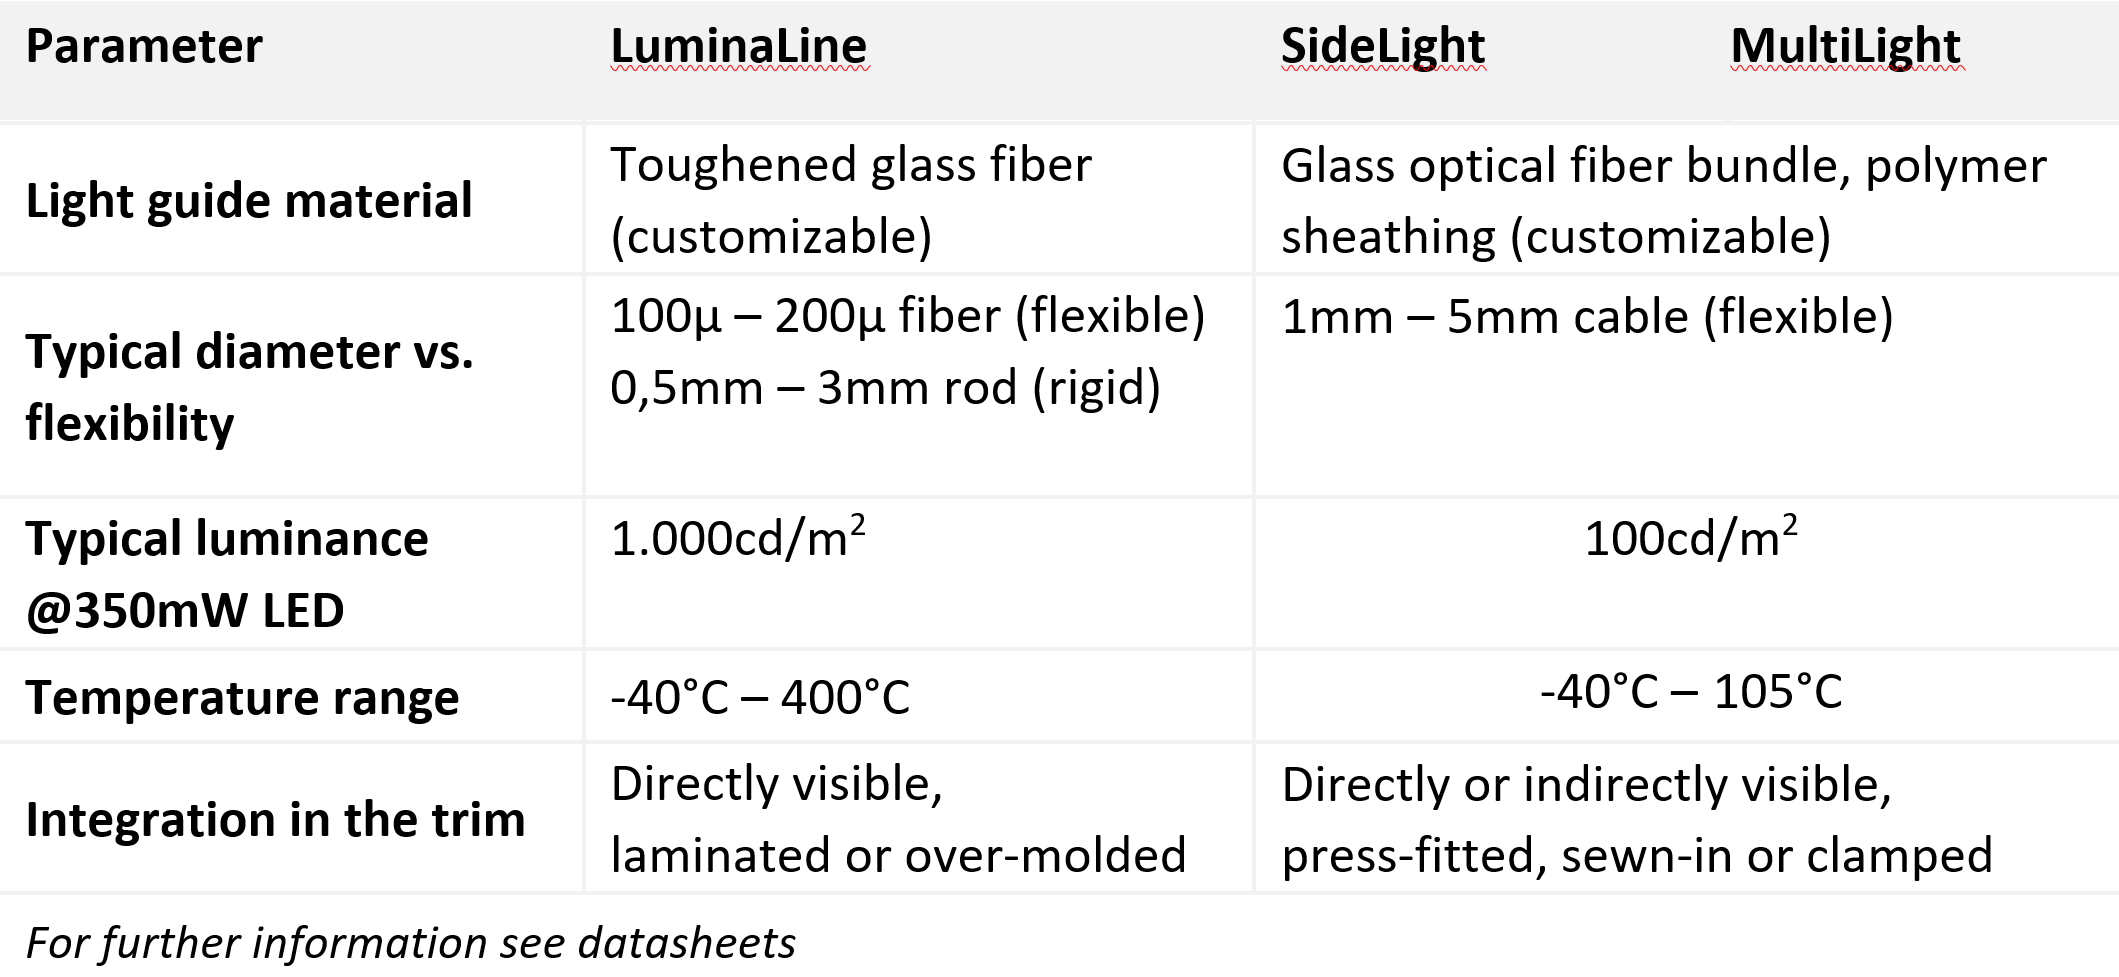 Diagramm mit den technischen Merkmalen von LuminaLine, SideLight und MultiLight